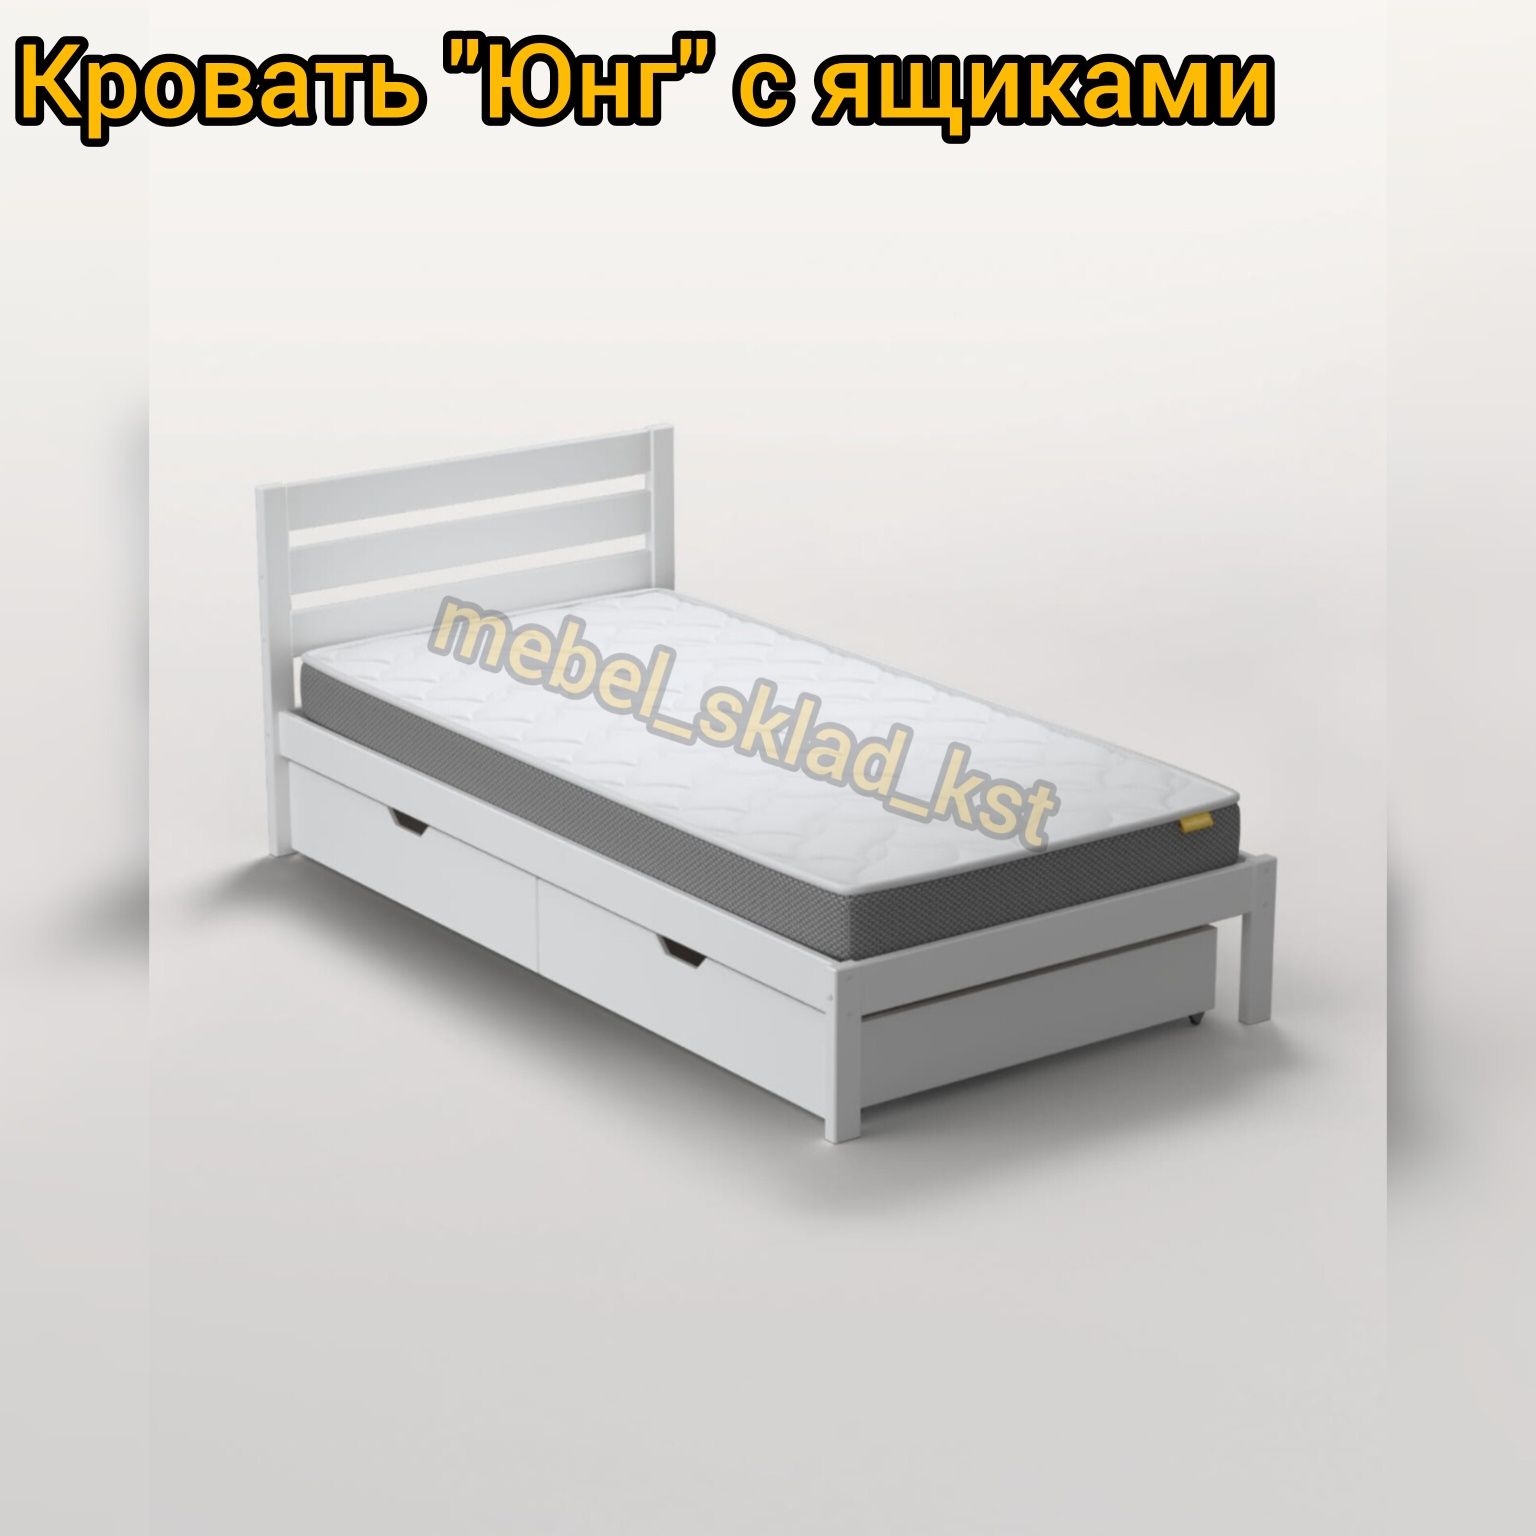 Кровать односпальная подростковая 180/200*90 см